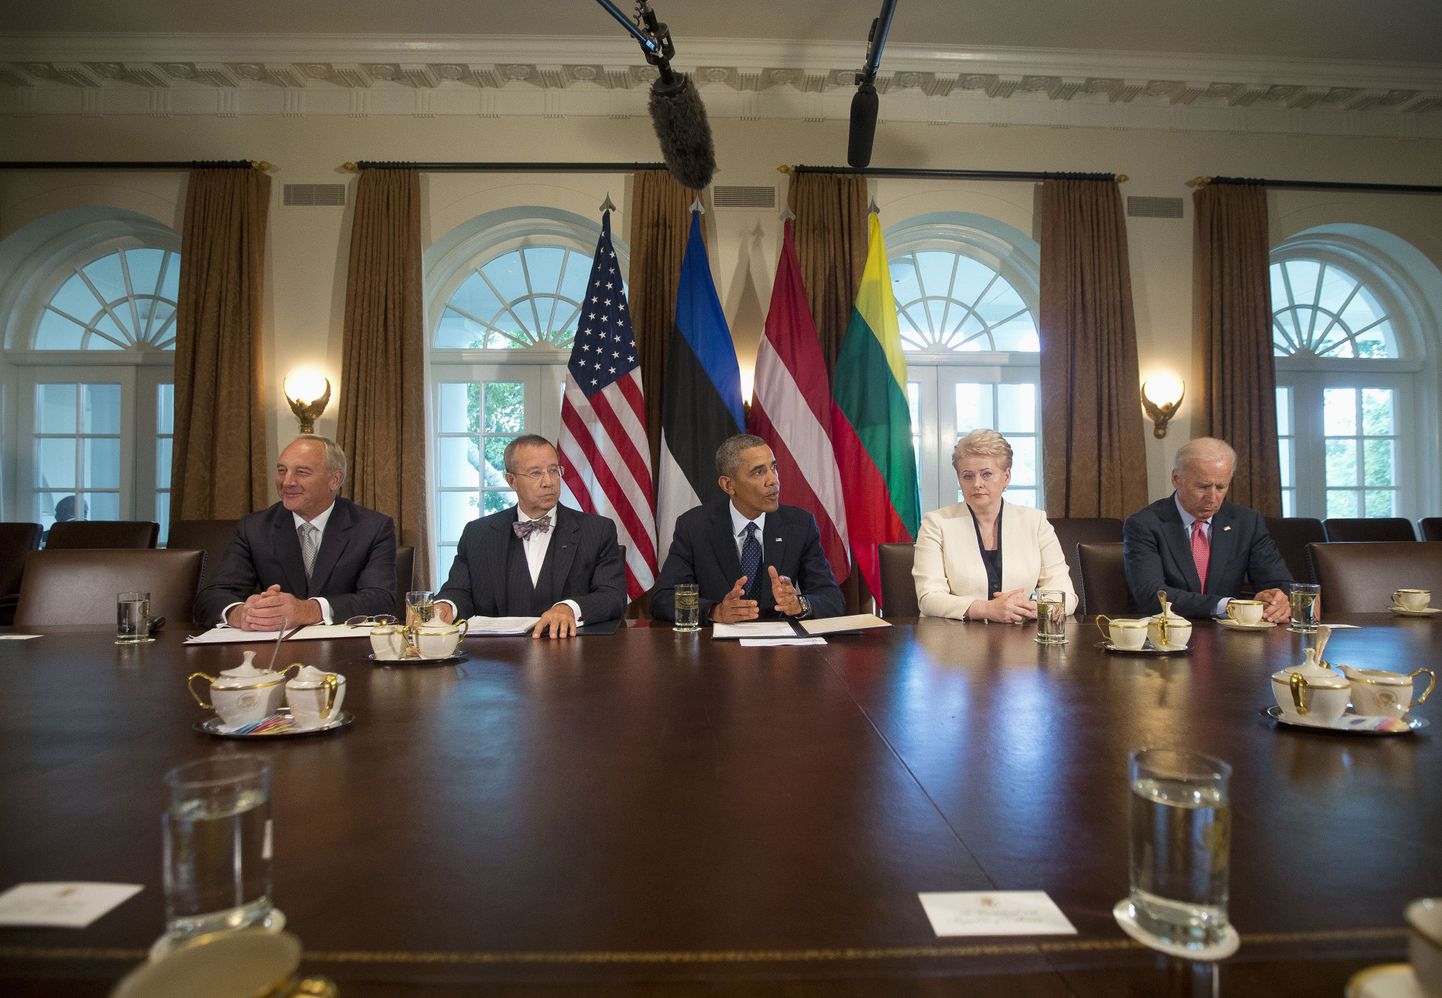 На встрече президентов Латвии, Литвы и Эстонии в Вашингтоне с президентом США Бараком Обамой американская сторона заверила собеседников в том, что сотрудничество в Балтийском регионе будет продолжено и расширено по вопросам экономики и безопасности, что позволяет решать глобальные вызовы.